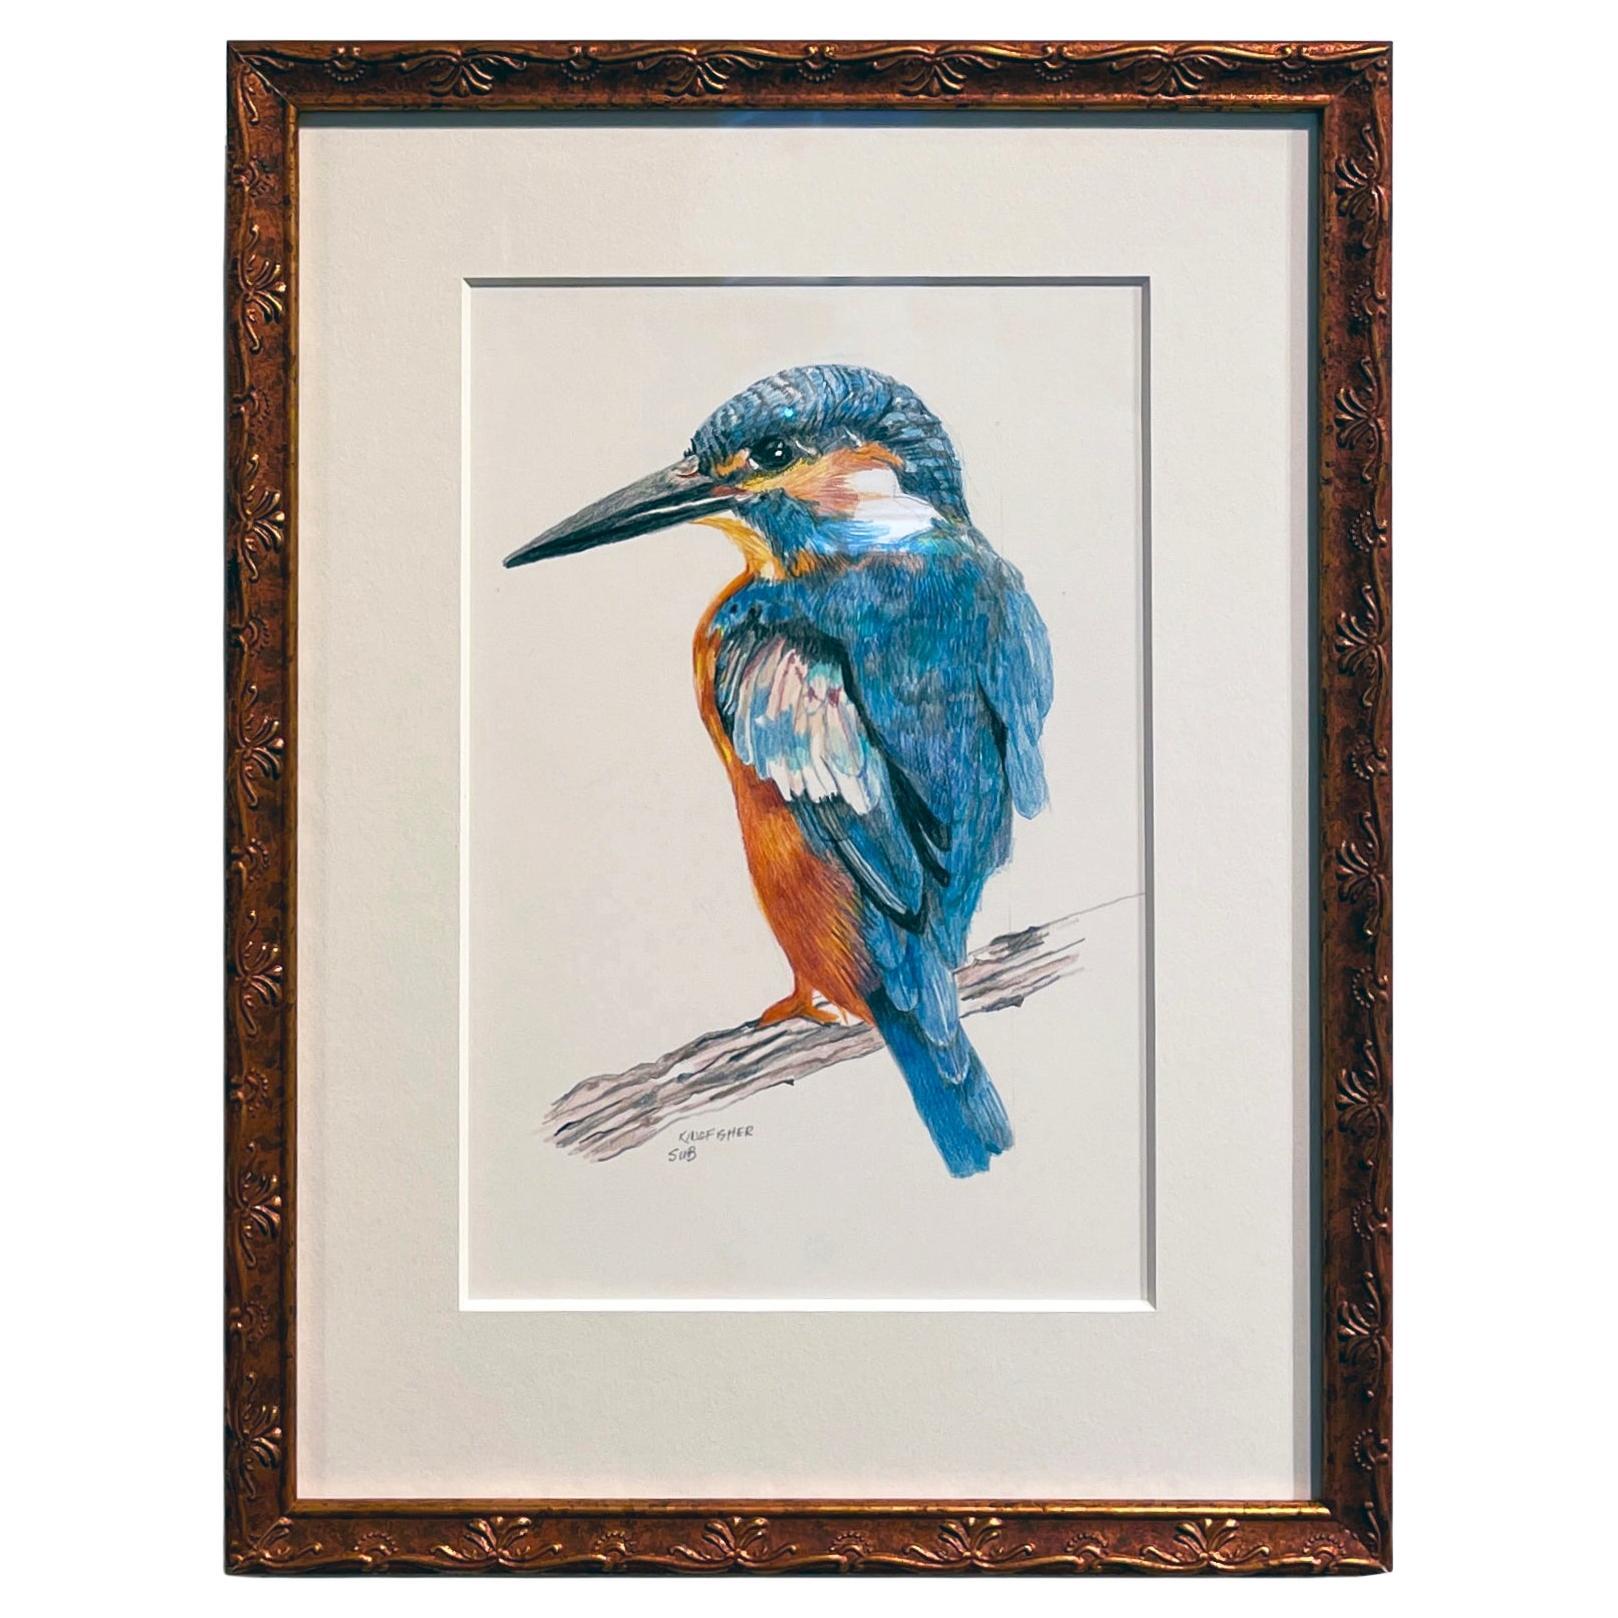 Kingfisher, Buntstiftzeichnung mit Blau, Orange, Braun, mattiert & gerahmt